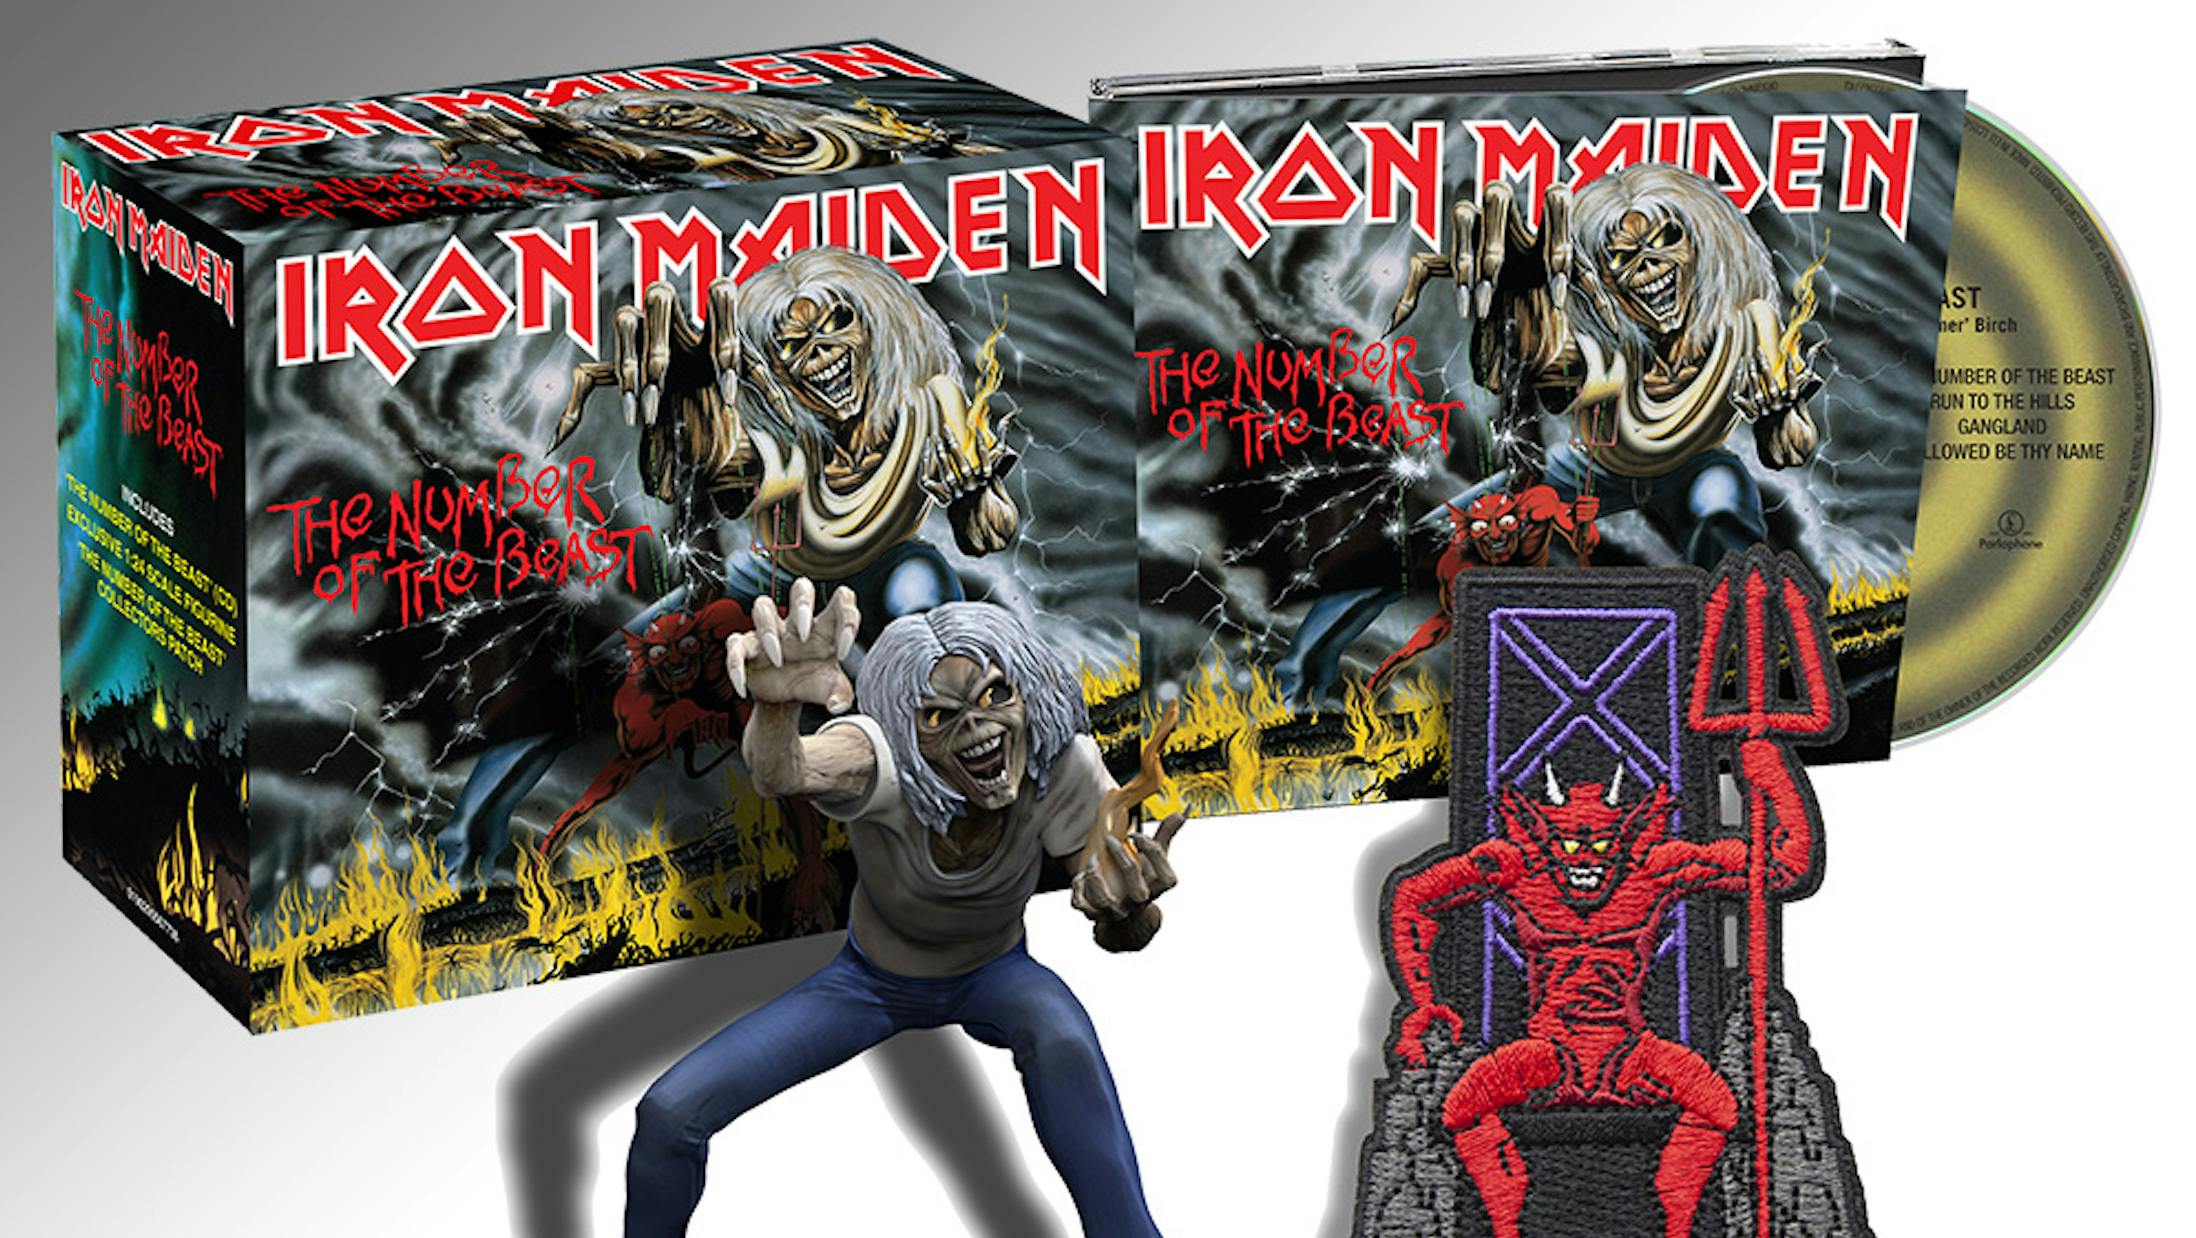 Iron Maiden To Reissue Their Studio Albums On Digipak CD